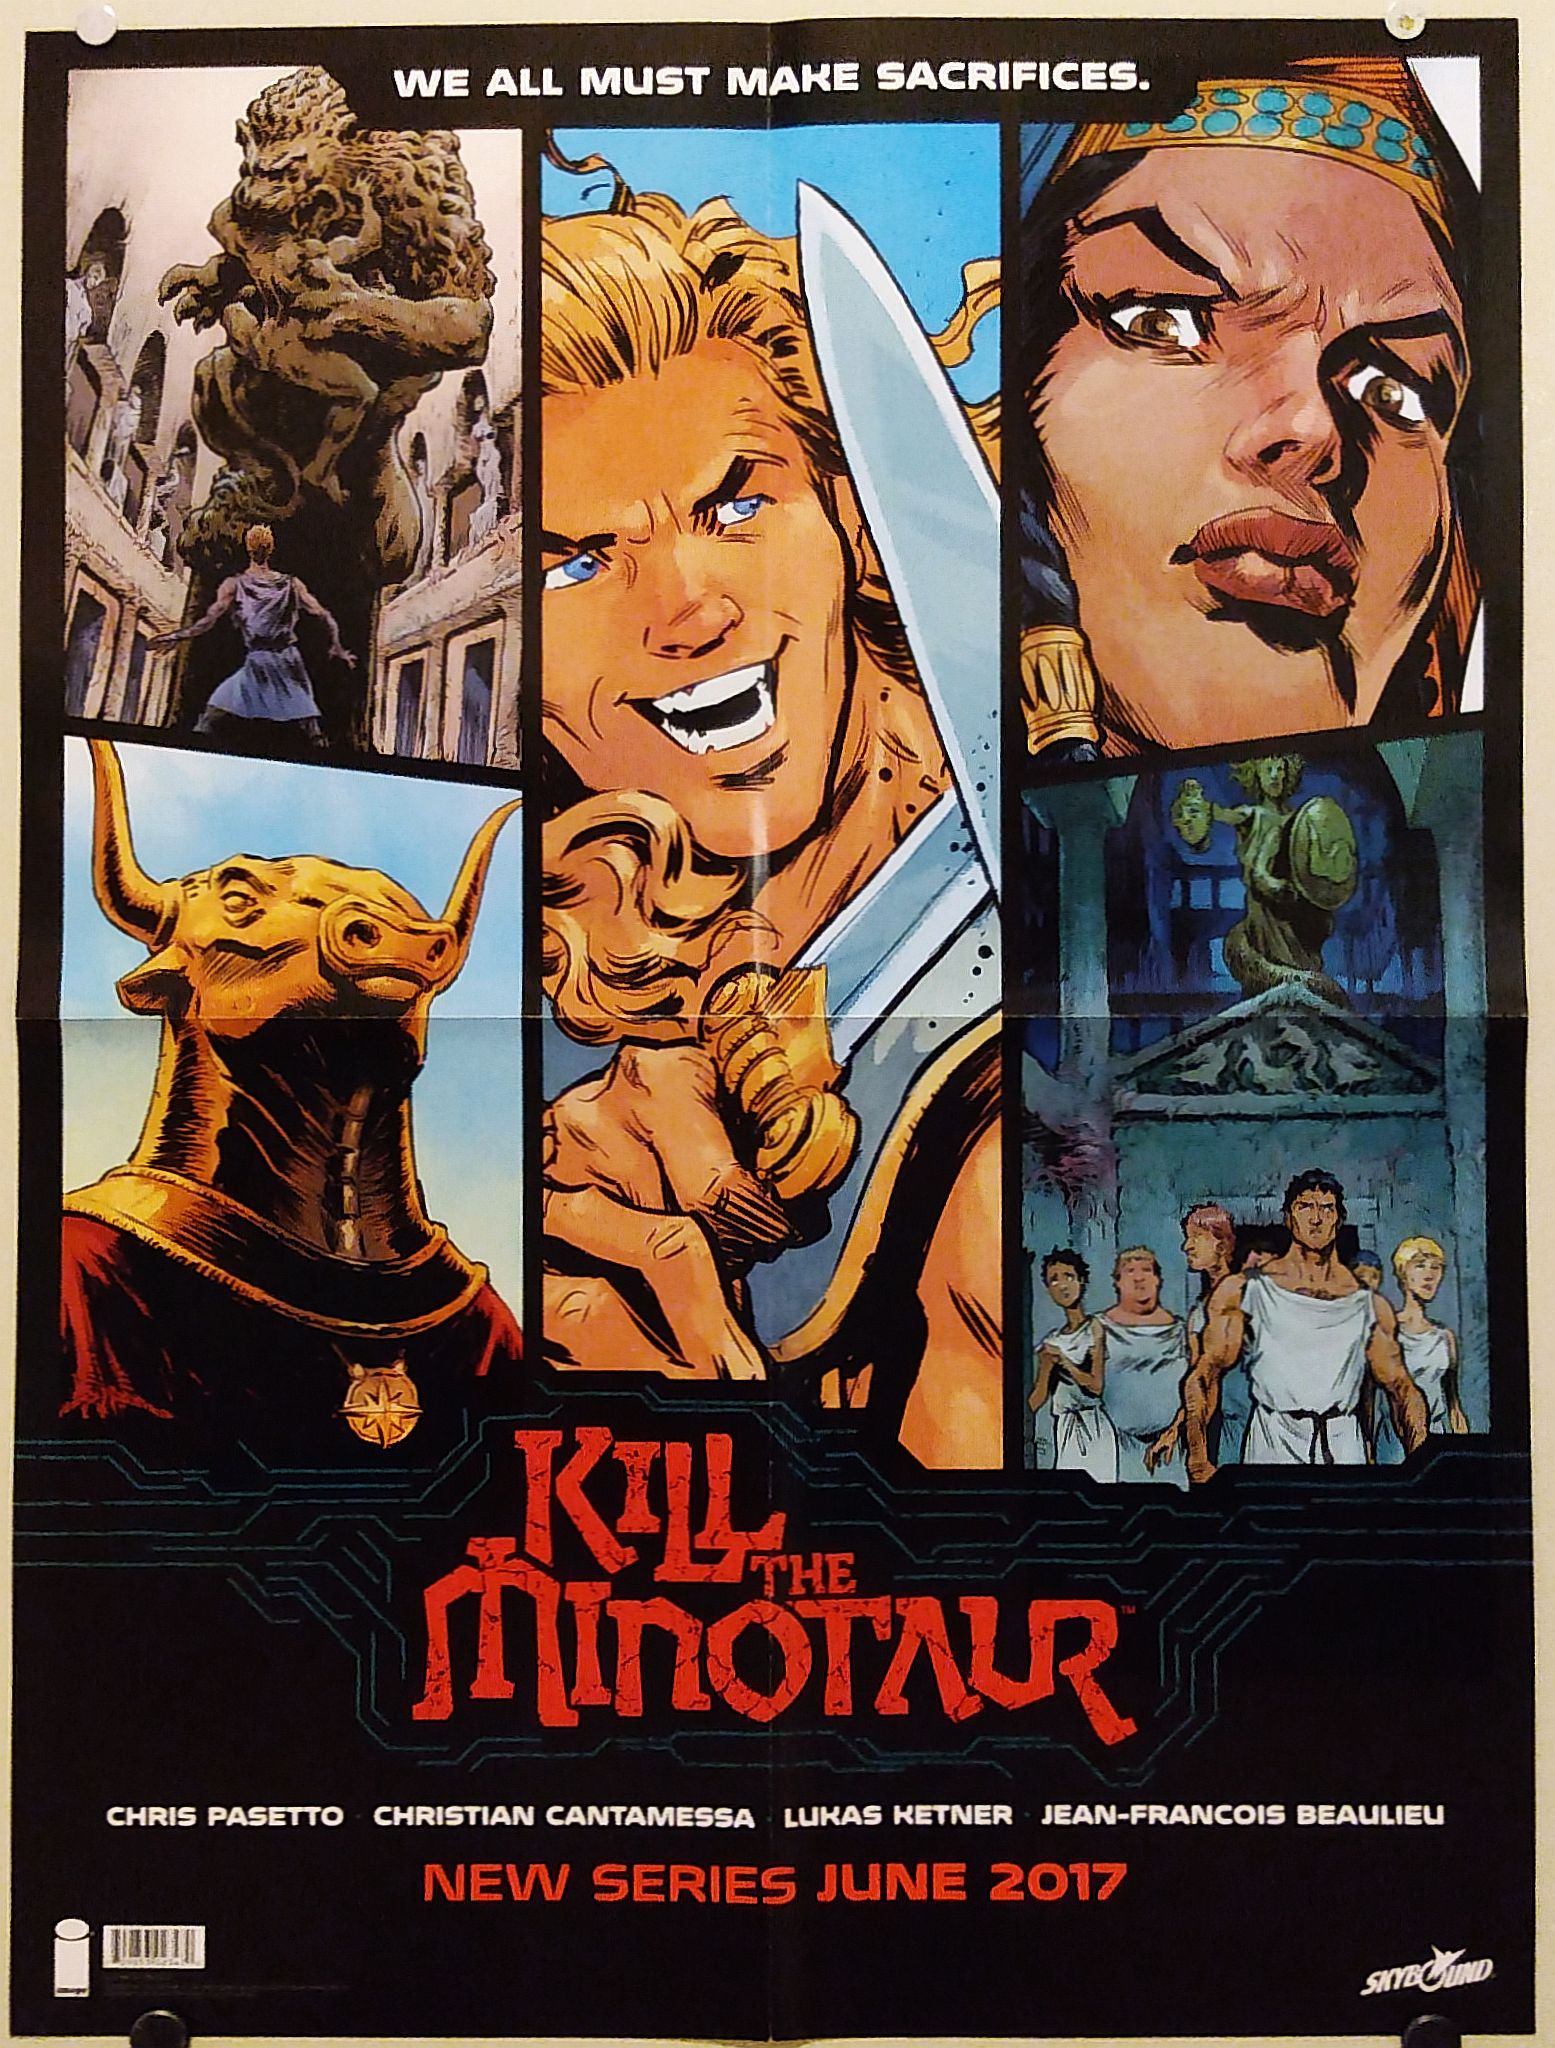 18" x 24" Folded Promo Poster Image Comics Kill The Minotaur 